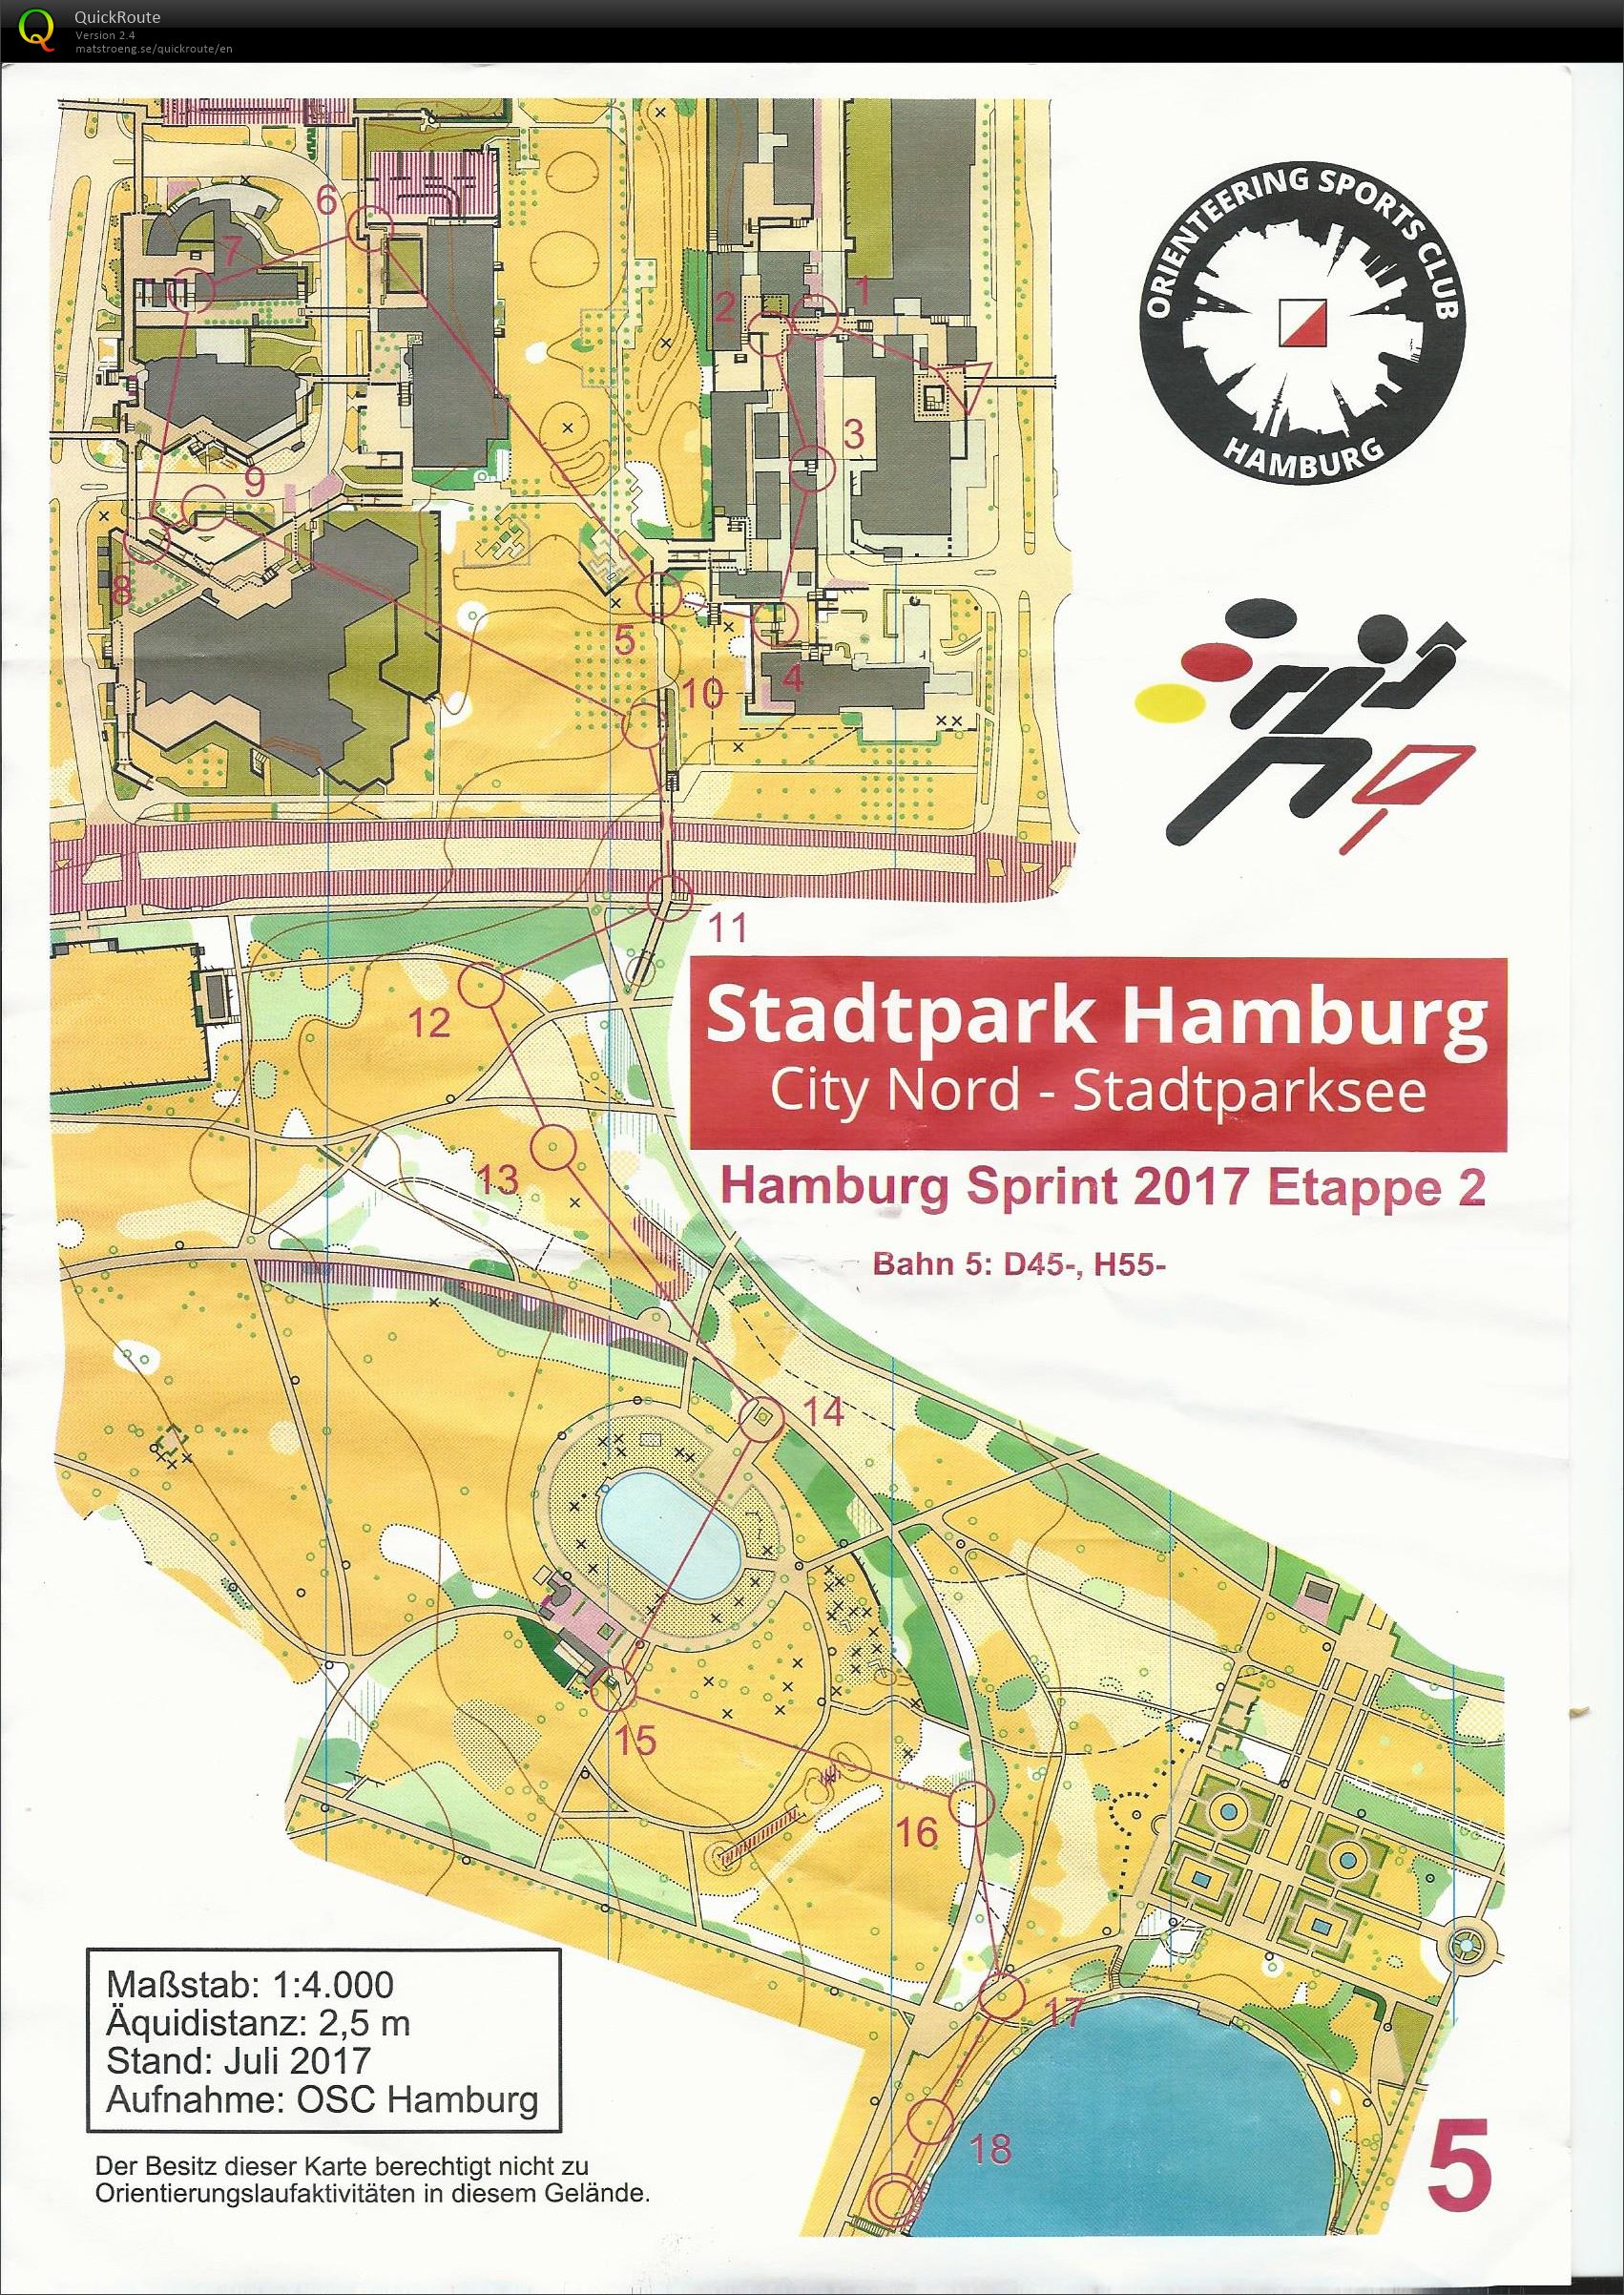 Hamburg sprint 2017 etape 2 (12.08.2017)